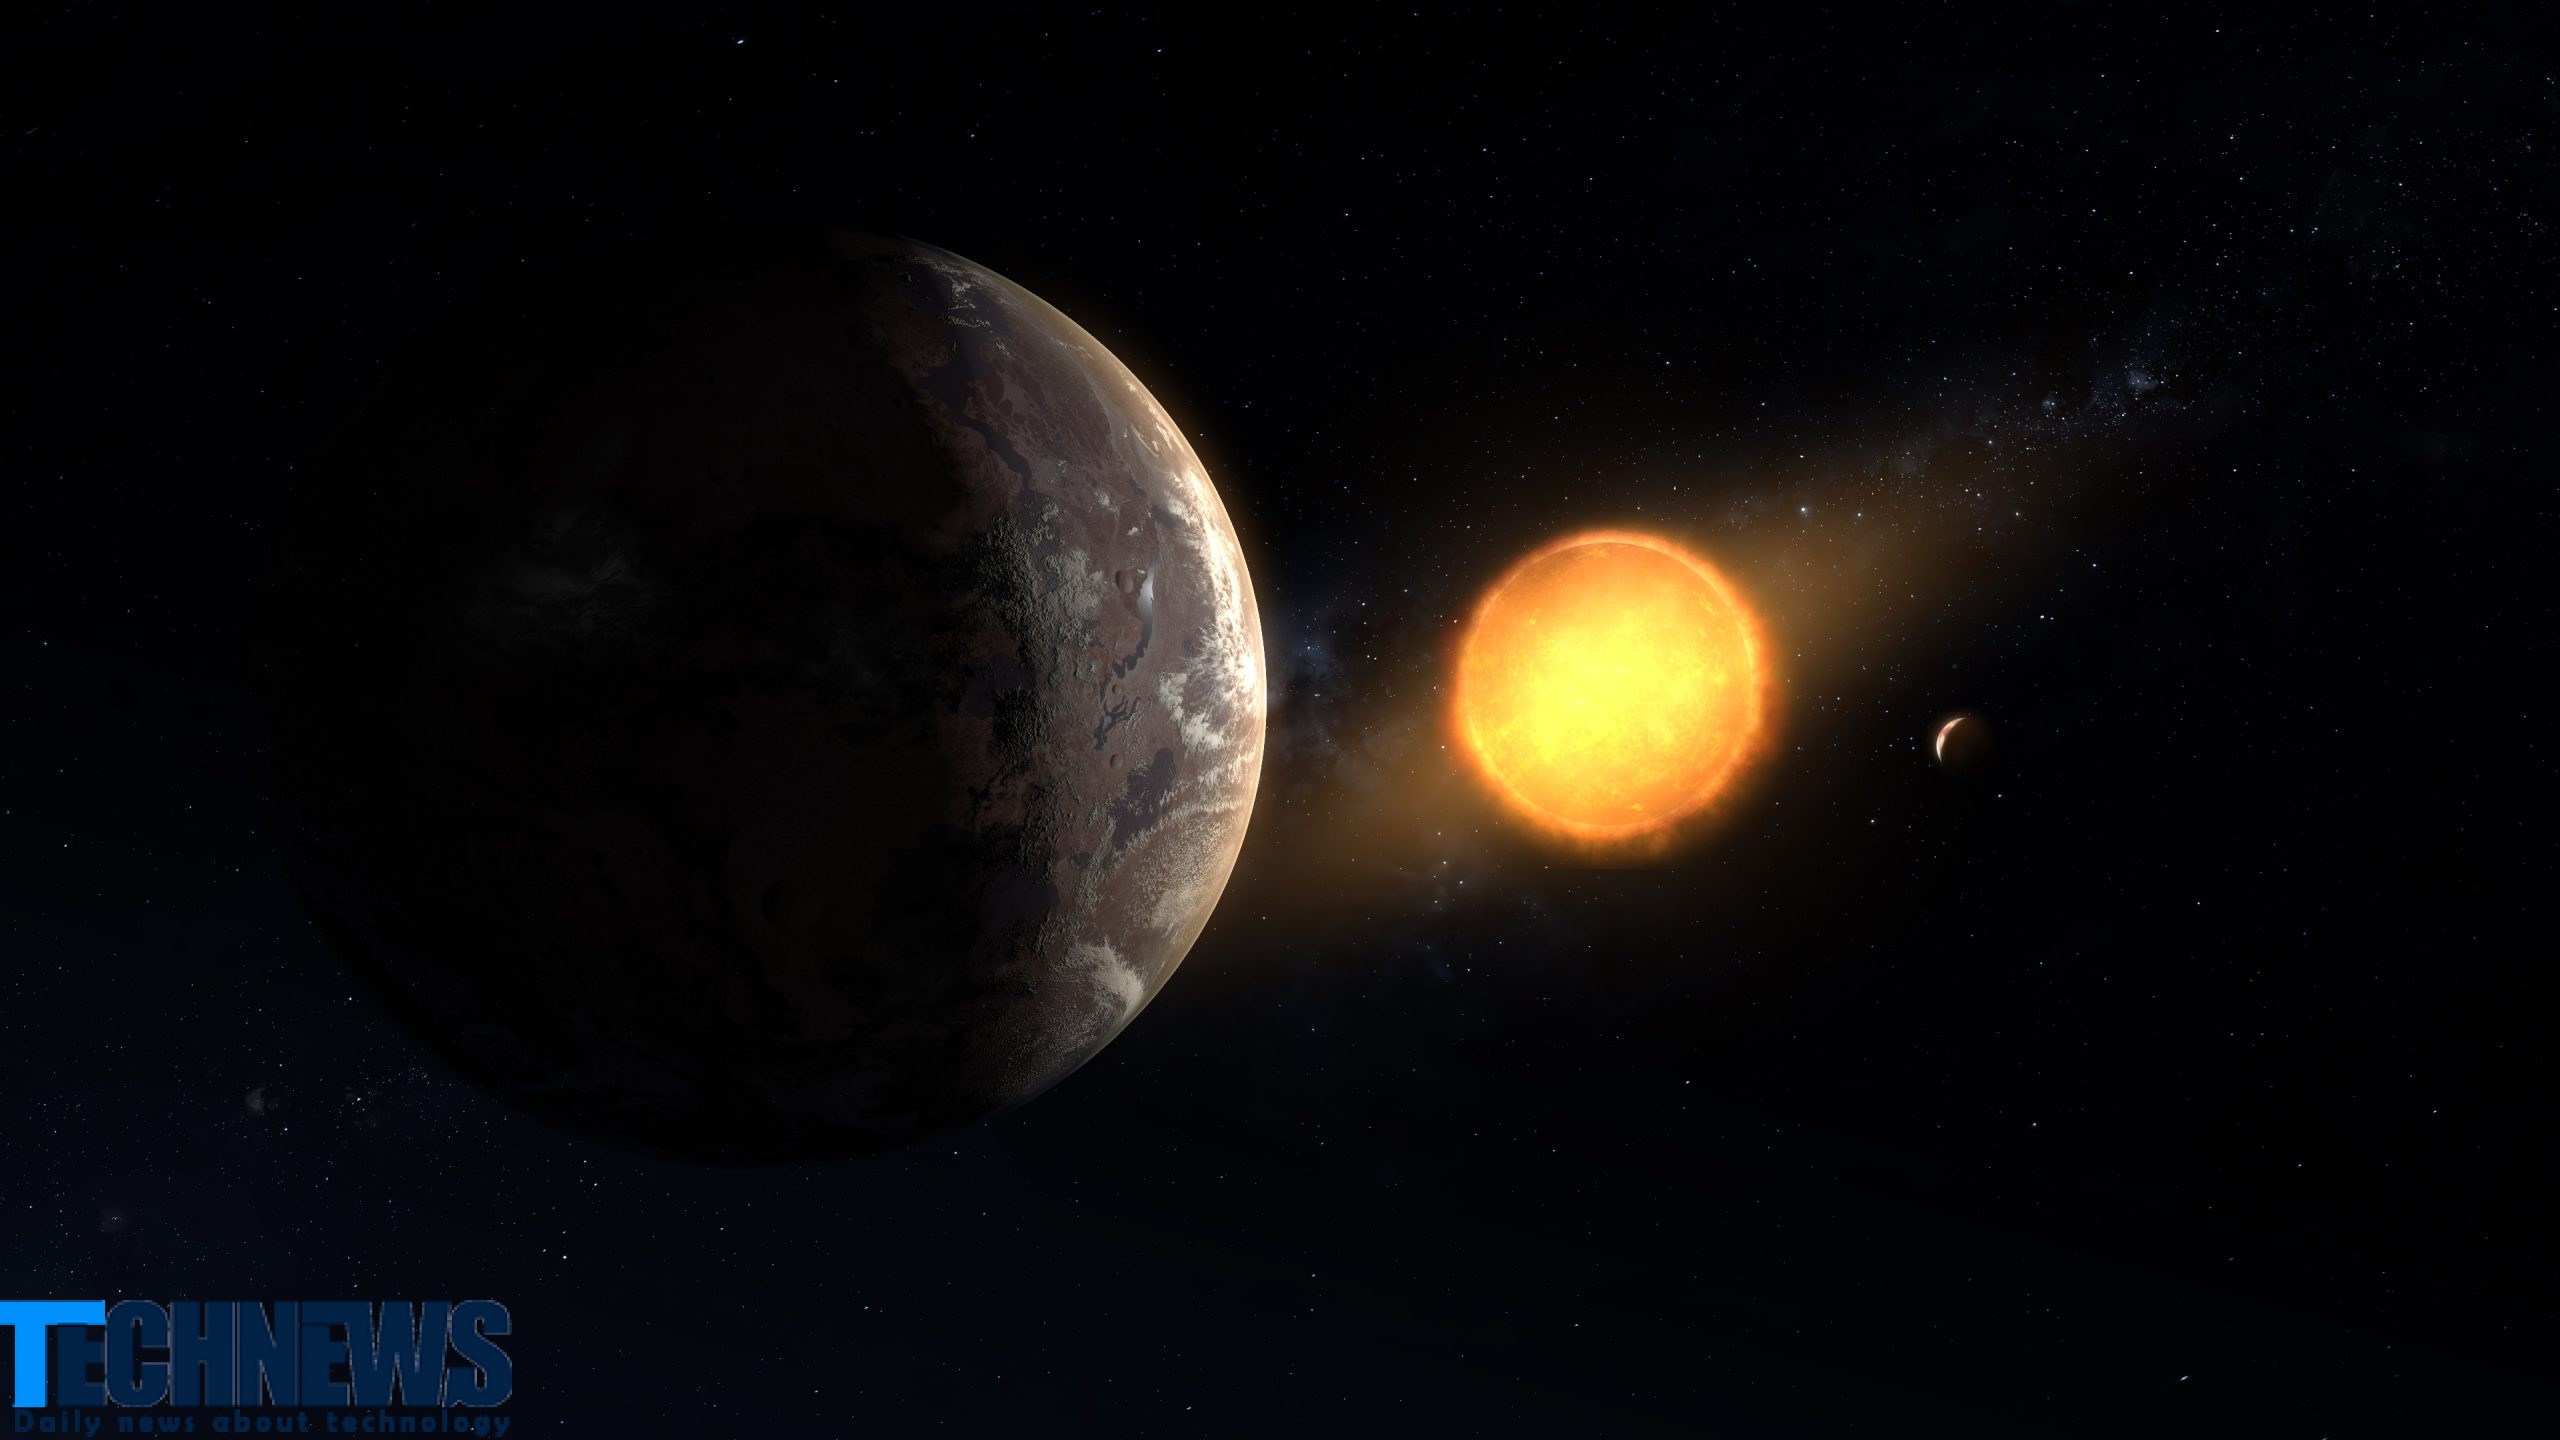 دانشمندان راهی برای عکسبرداری از سطح سیاره های فراخورشیدی با کمک خورشید پیدا کردند